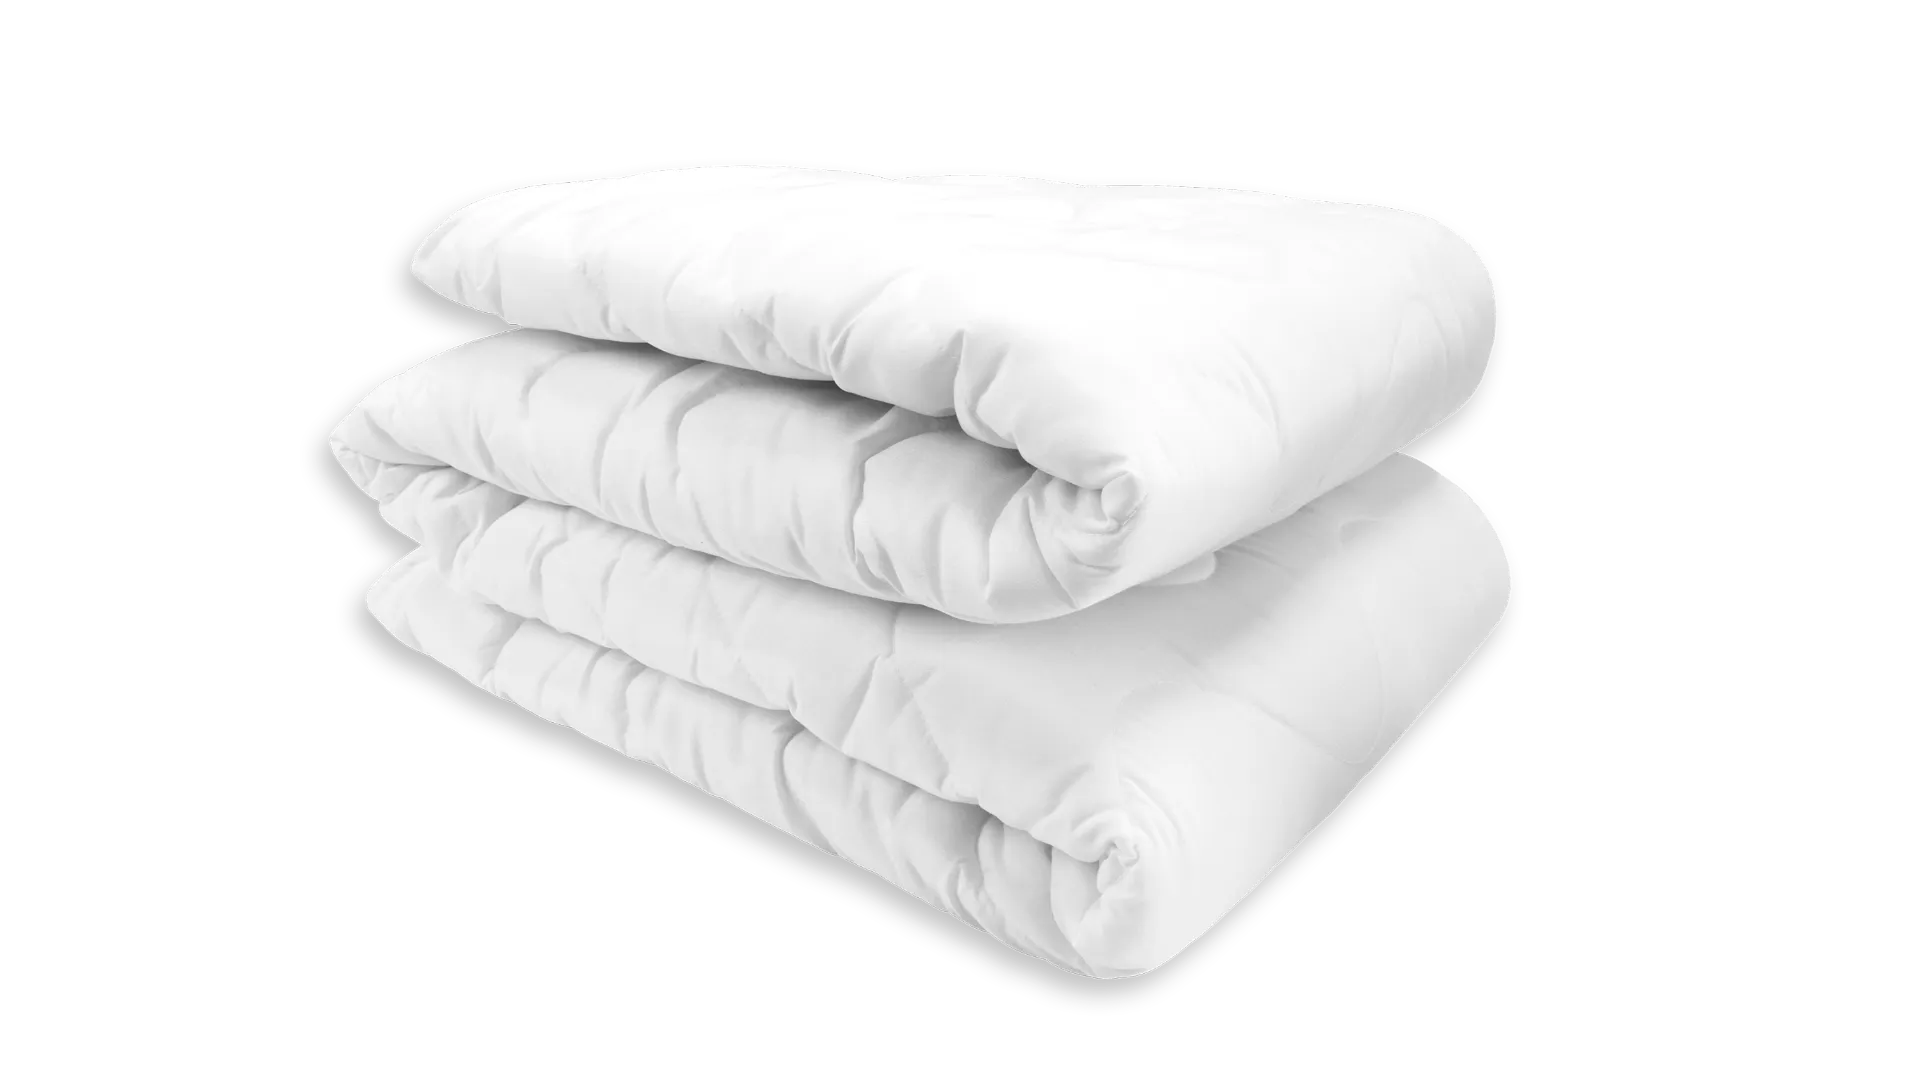 Mikroszálas matracvédő